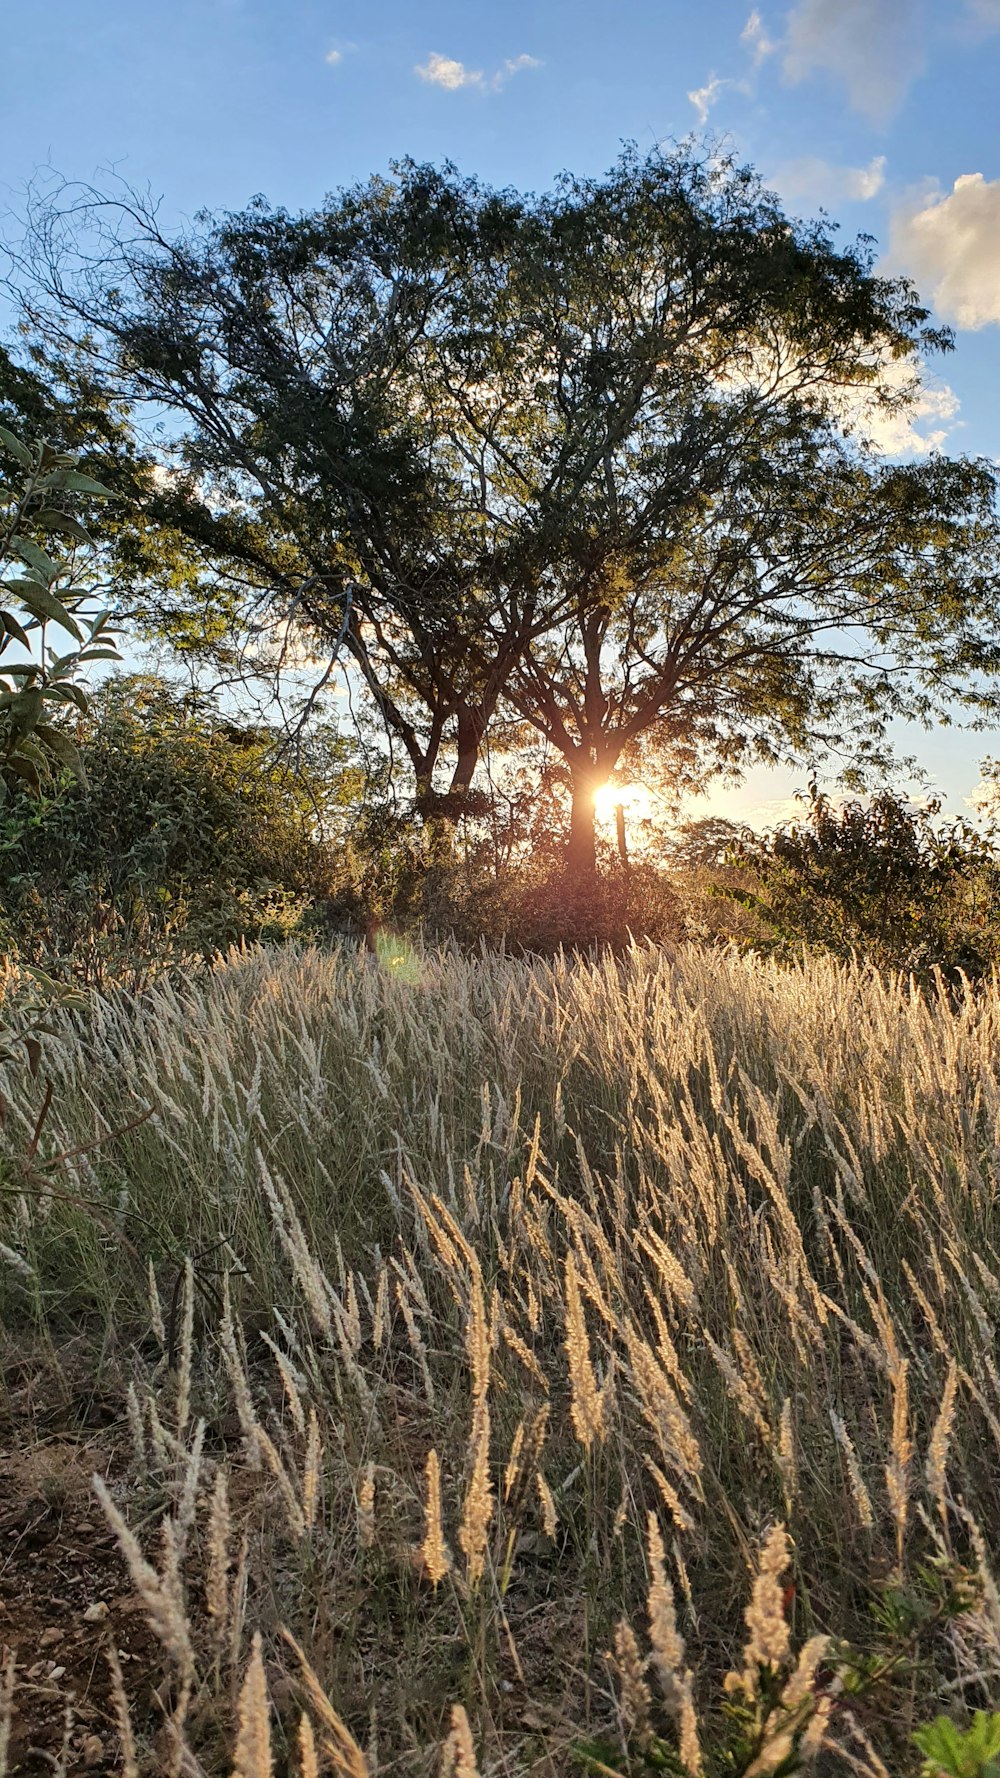 green grass field during sunset